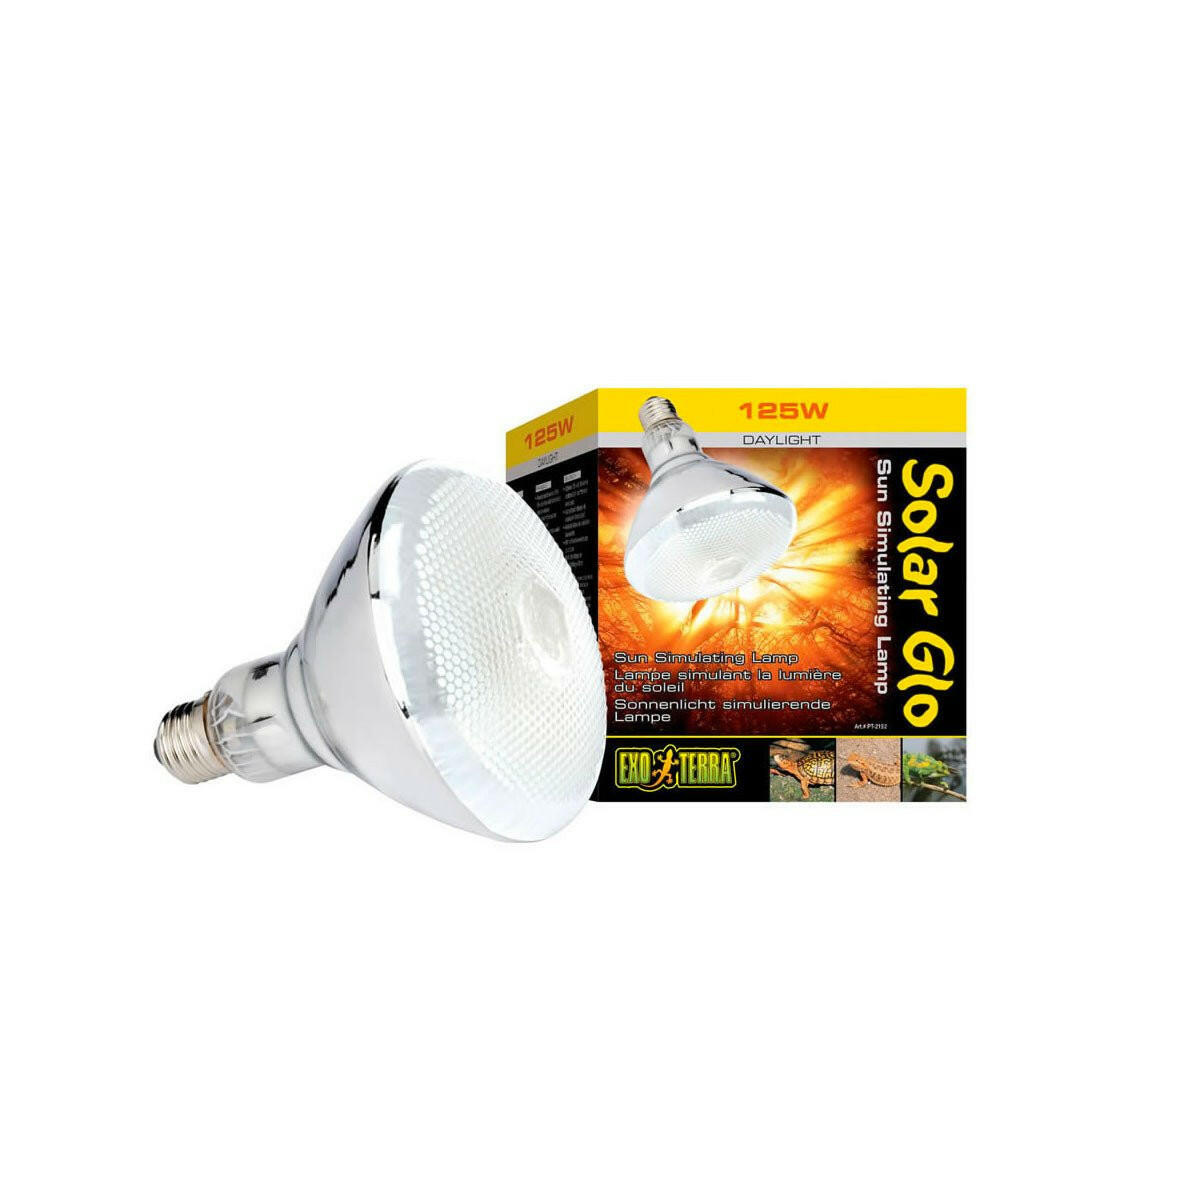 Exo Terra SolarGlo Lamp 125W - Charterhouse Aquatics